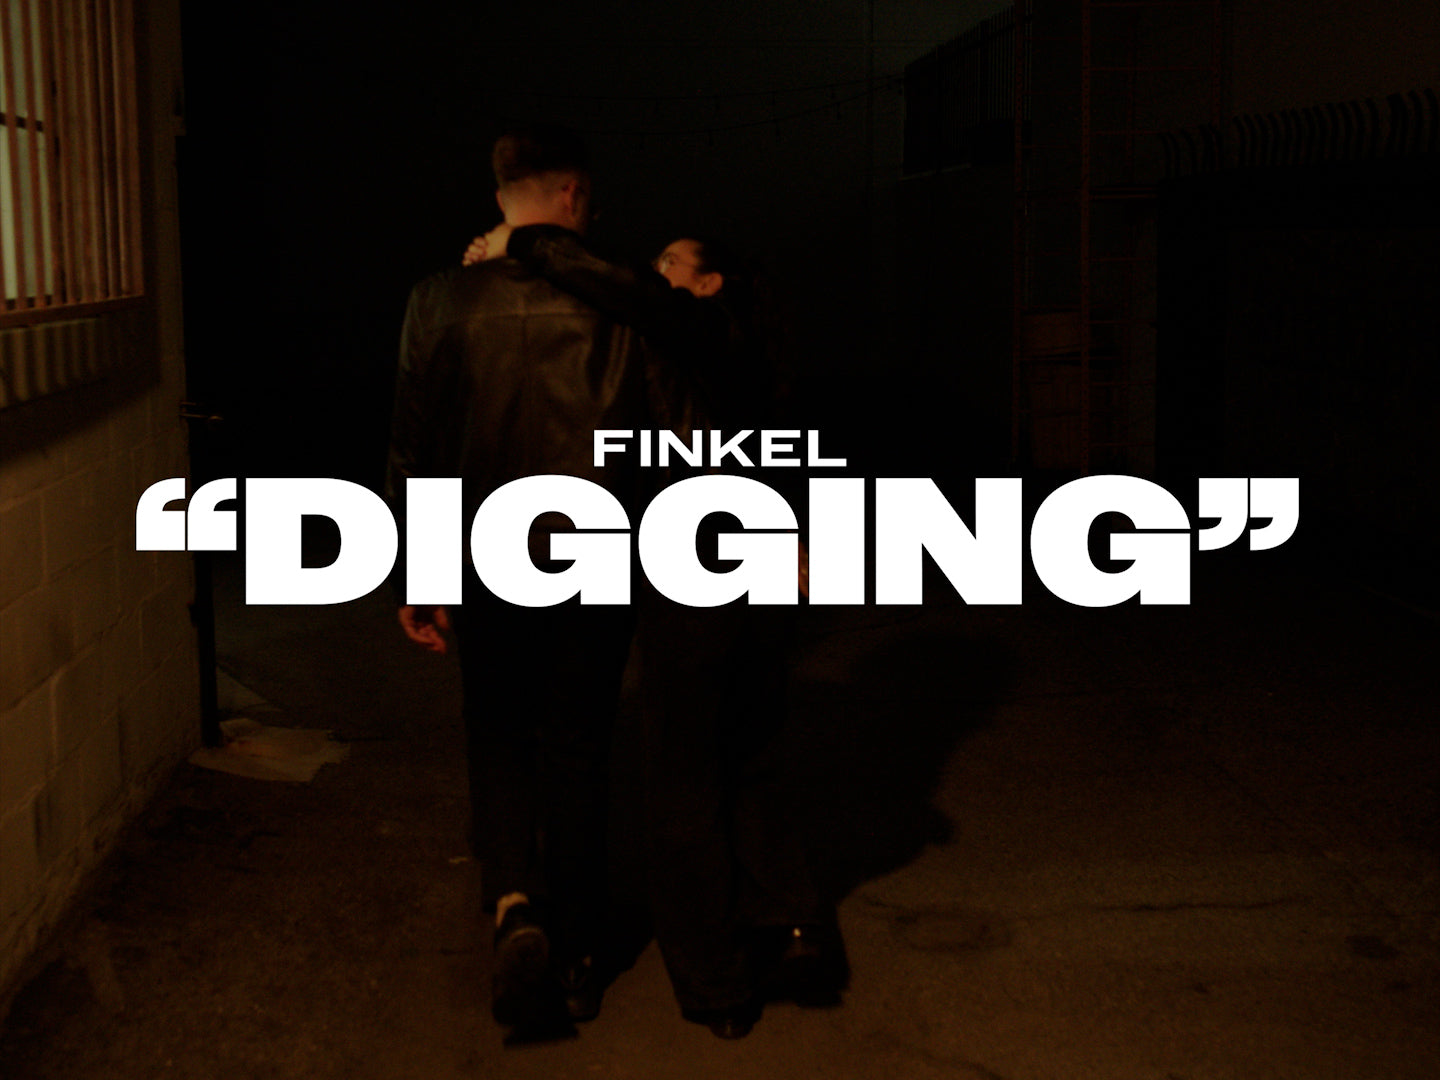 Load video: FINKEL - Digging - Official Video